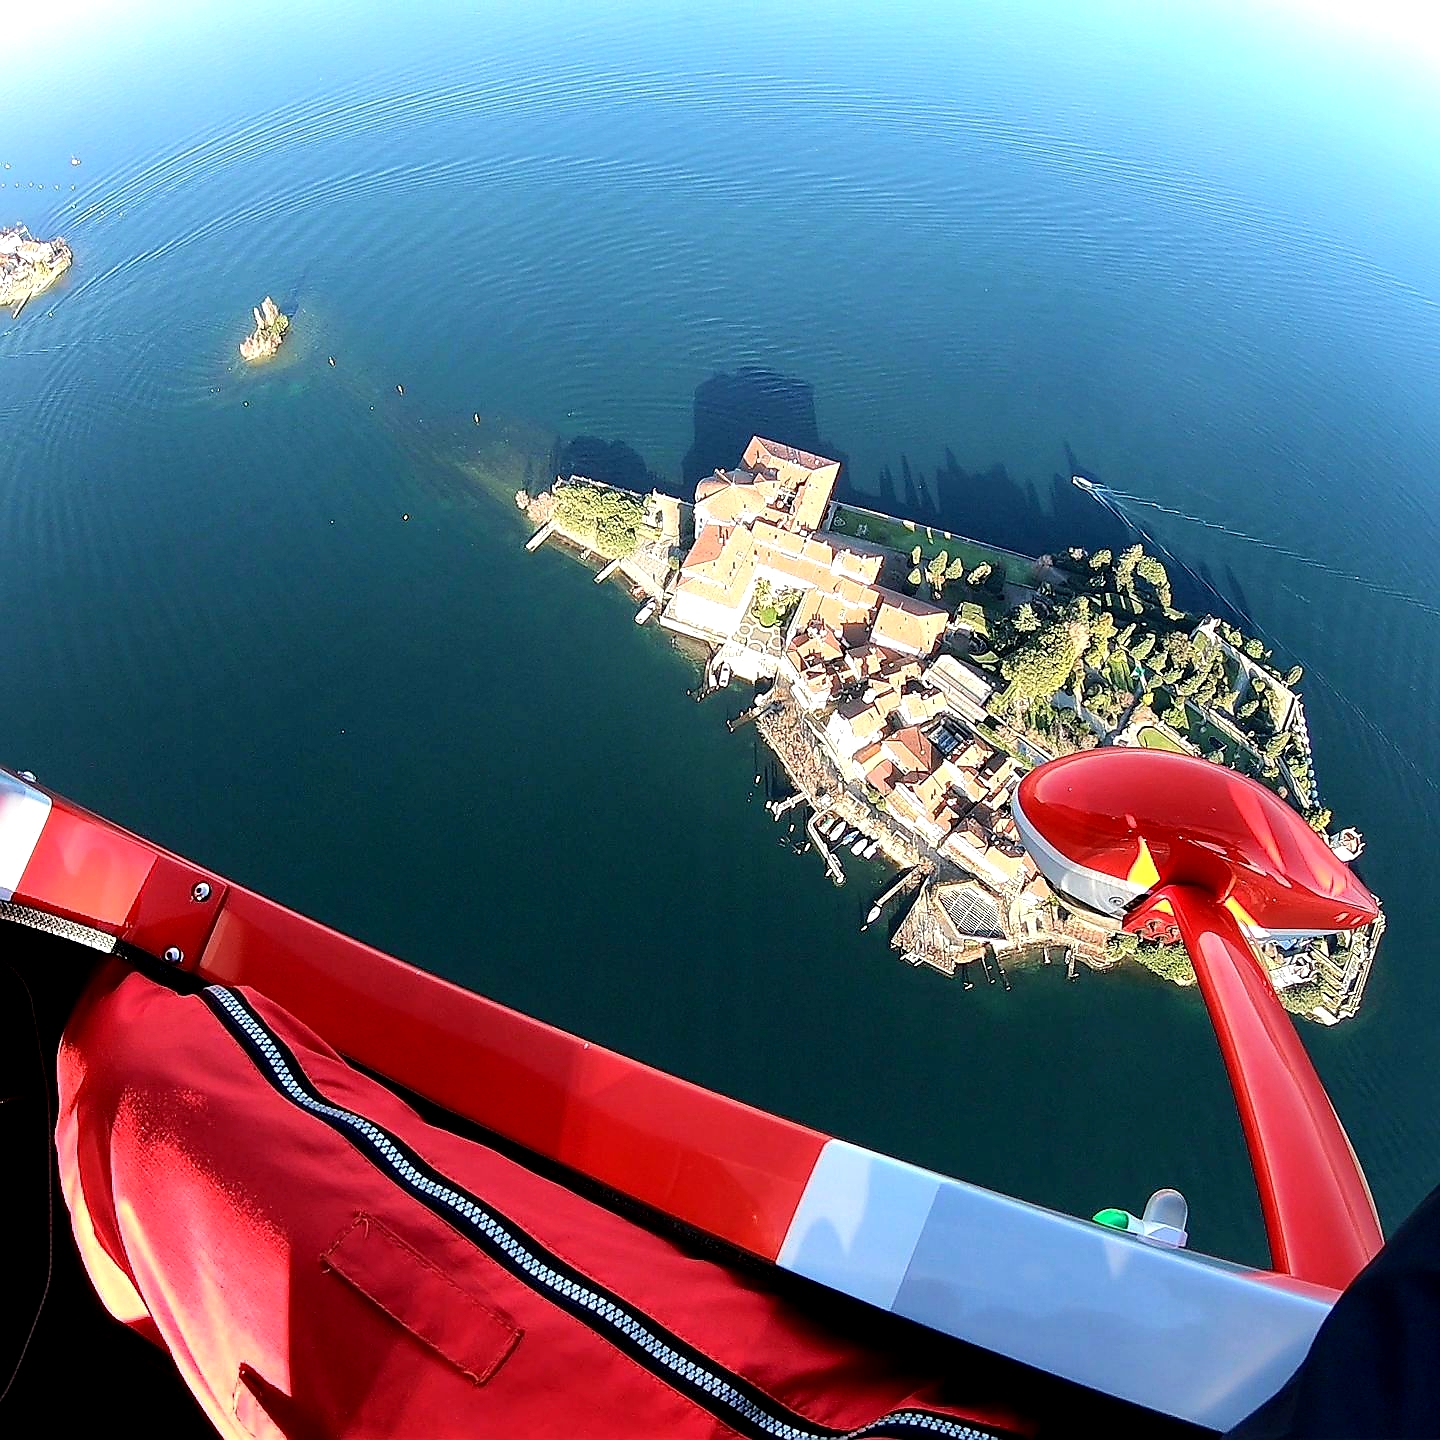 En vuelo sobre el lago Maggiore y las islas Borromeo